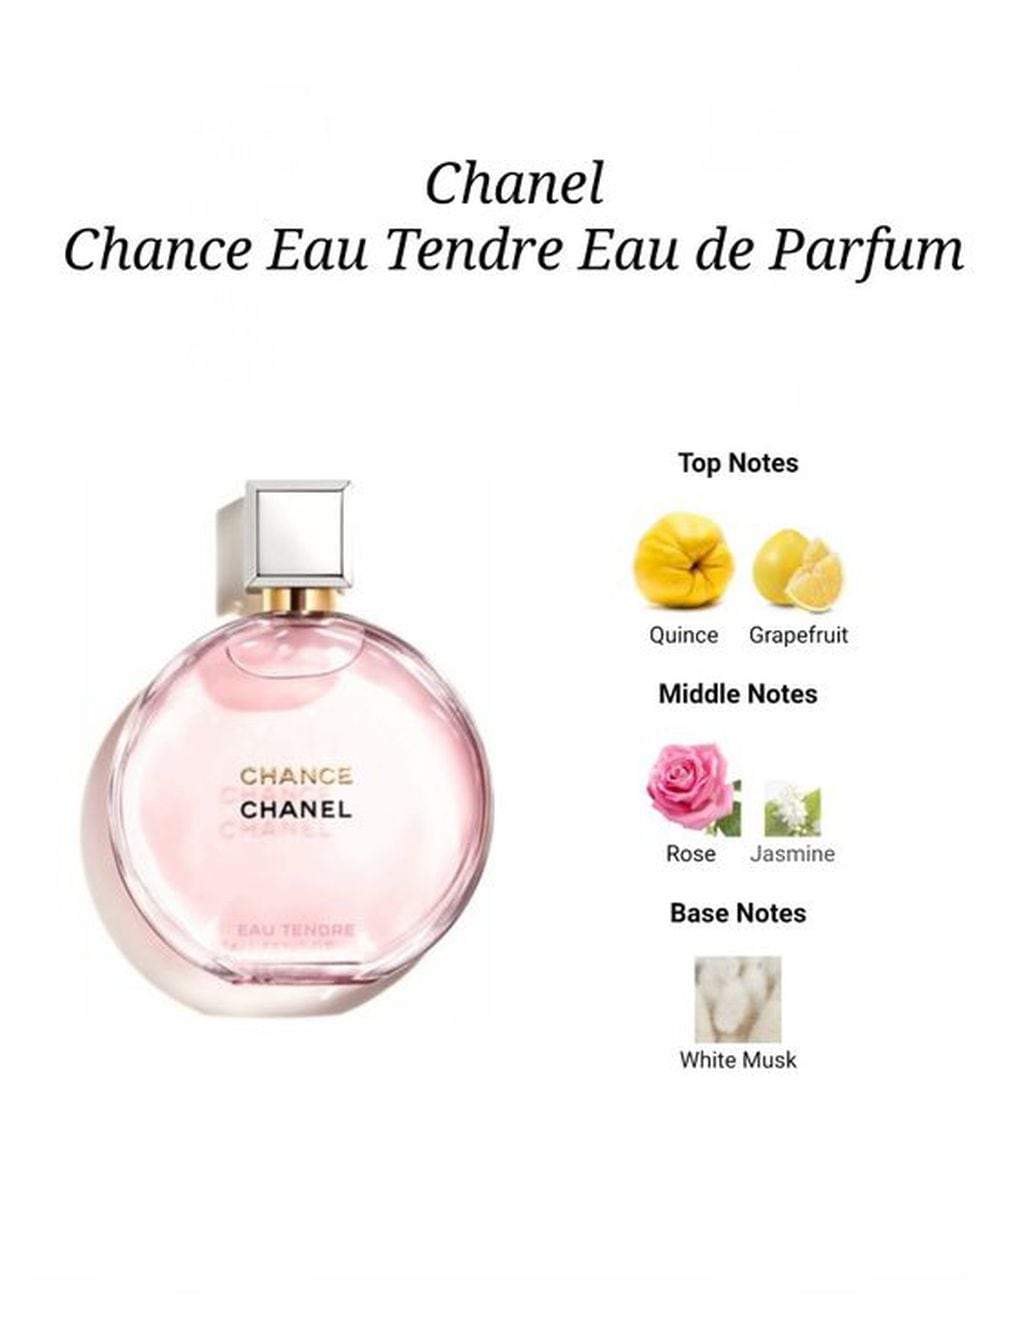 Chance de Chanel: con notas de membrillo, pomelo, rosa, jazmín y almizque blanco.